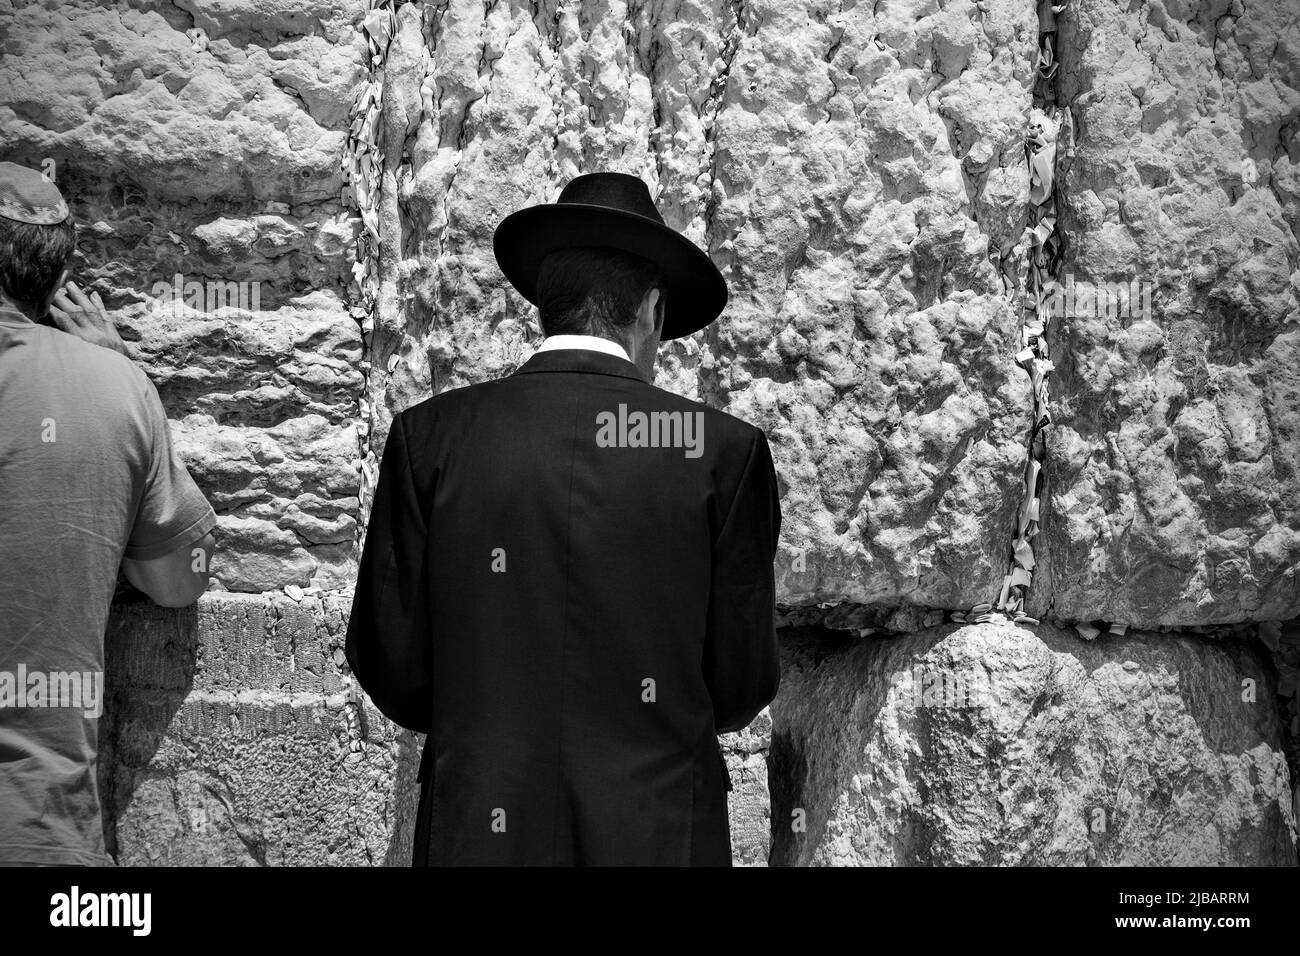 Gerusalemme, Israele - 20 maggio 2009: L'ebreo ortodosso vestito con abiti tradizionali prega presso il Muro Occidentale di Gerusalemme. Fotografia in bianco e nero Foto Stock